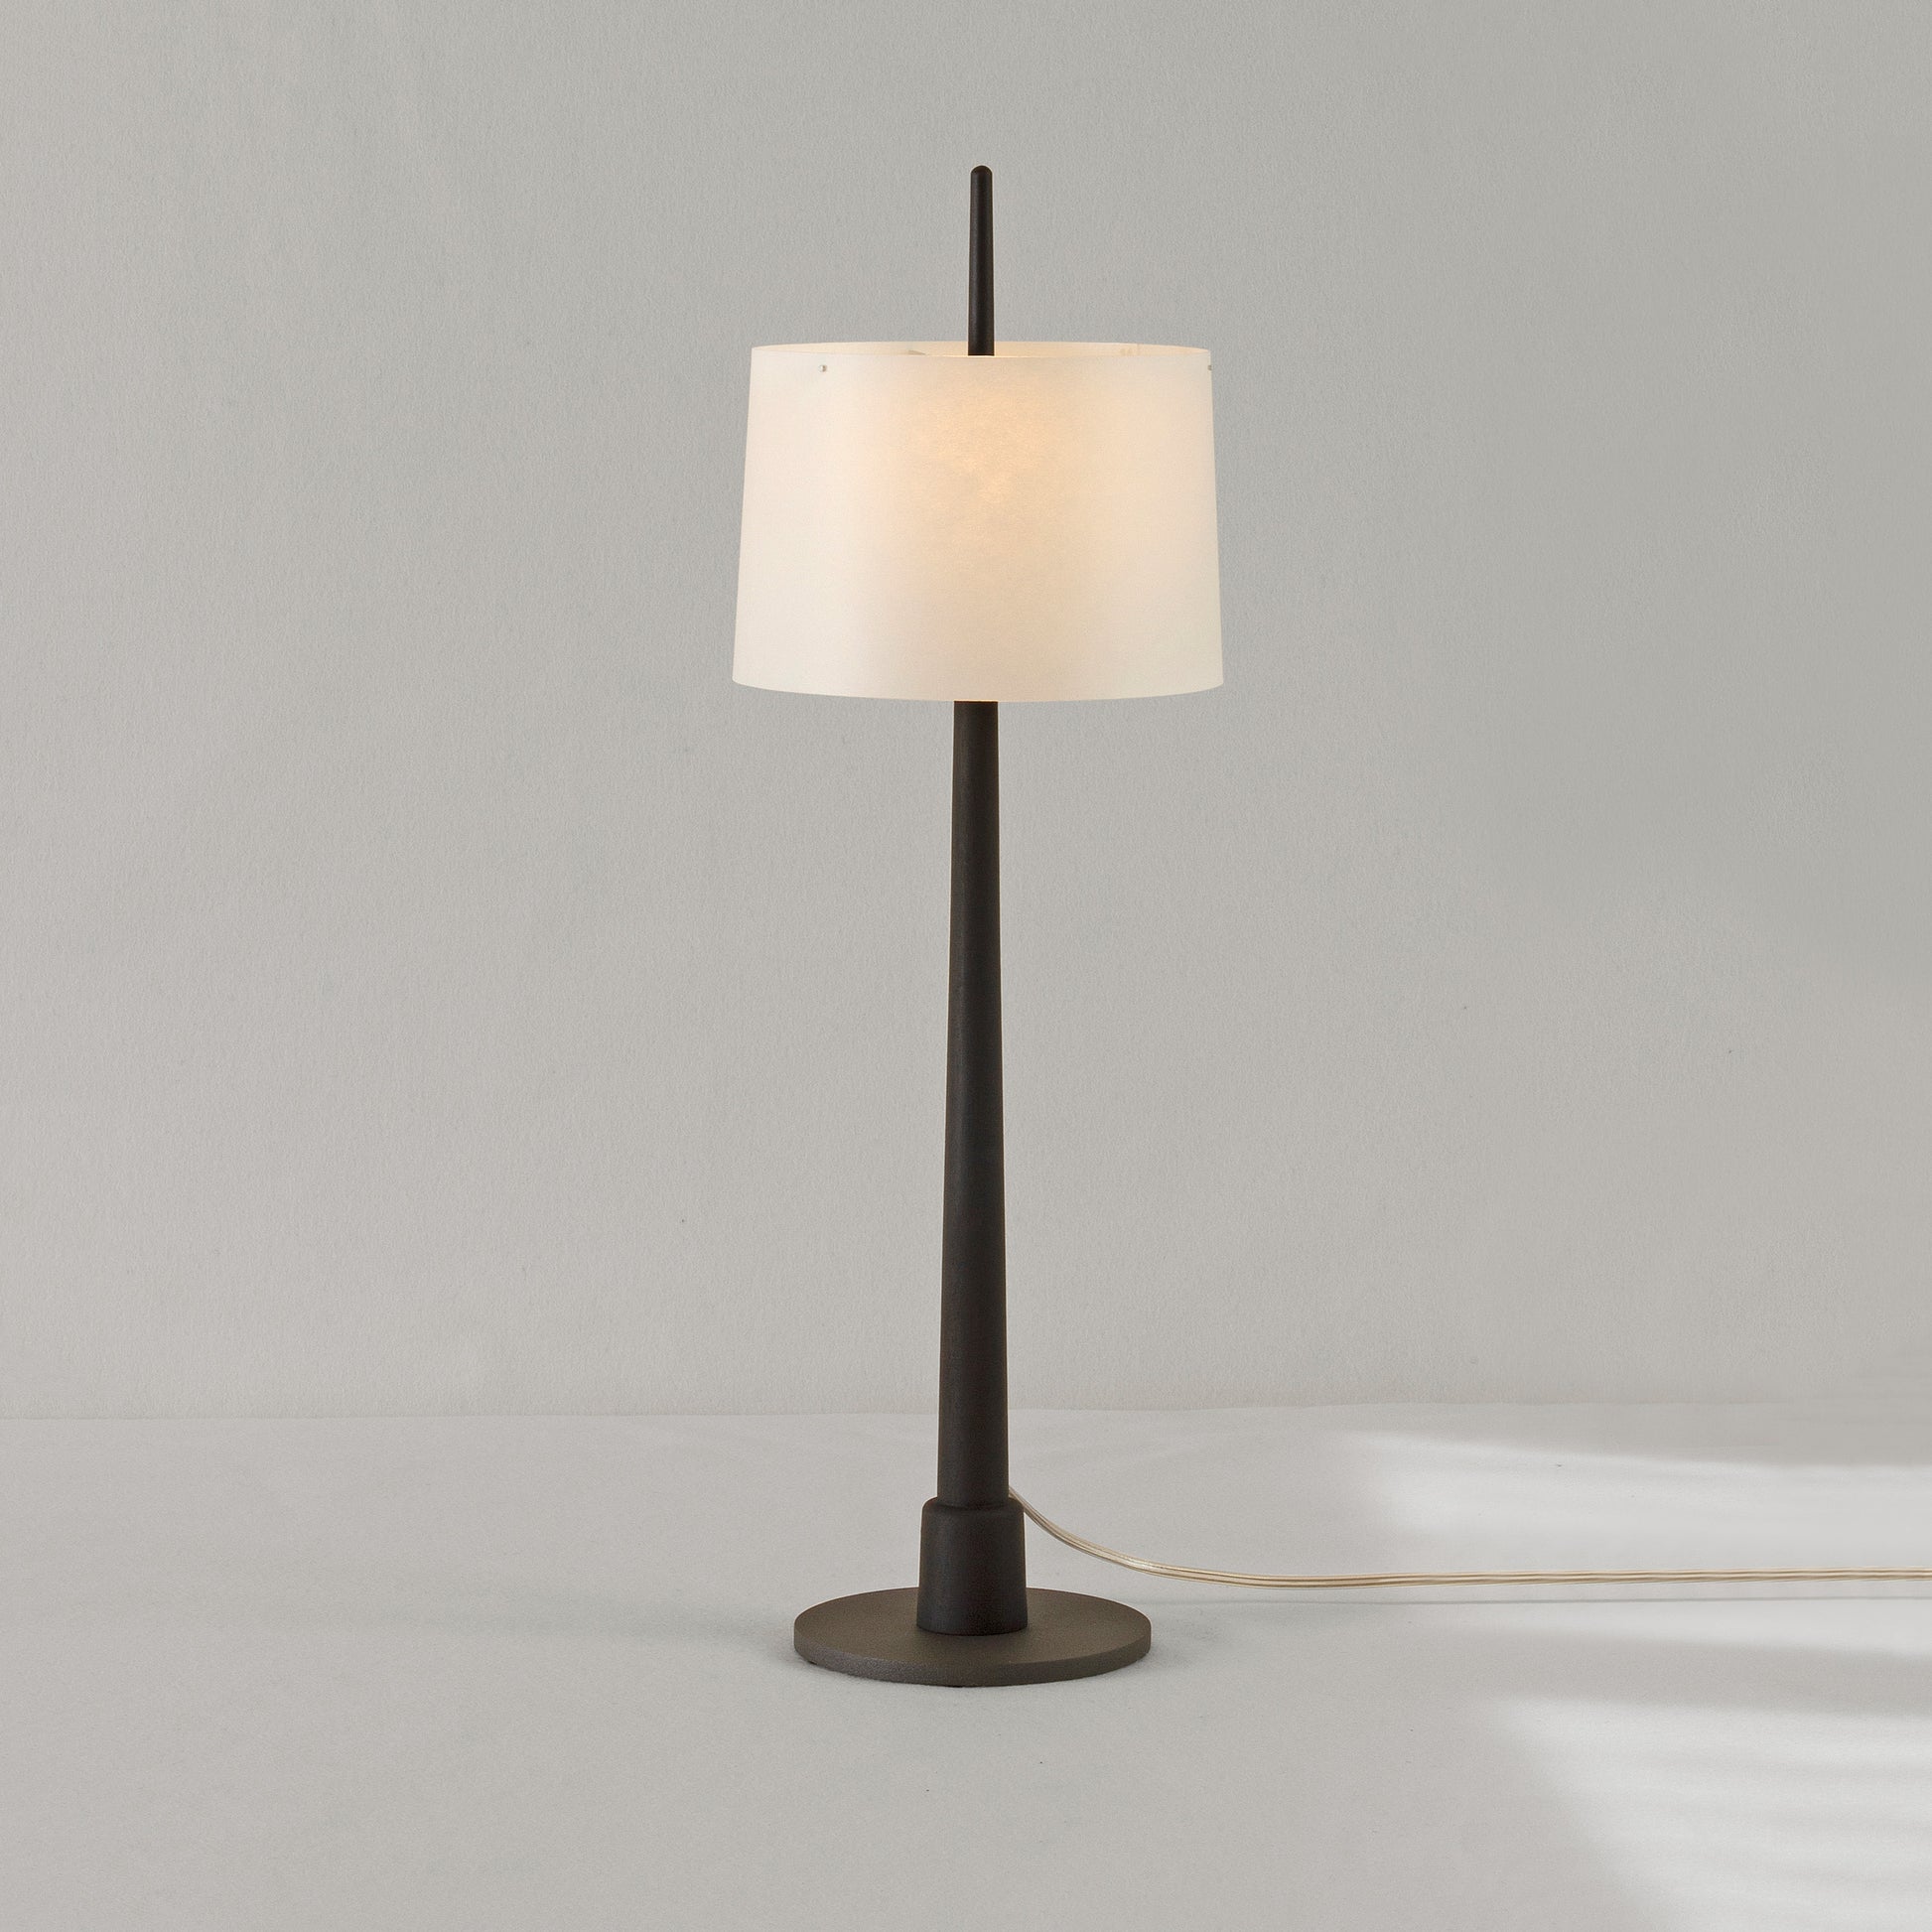 Gadd bordslampa 929-1918 i svart